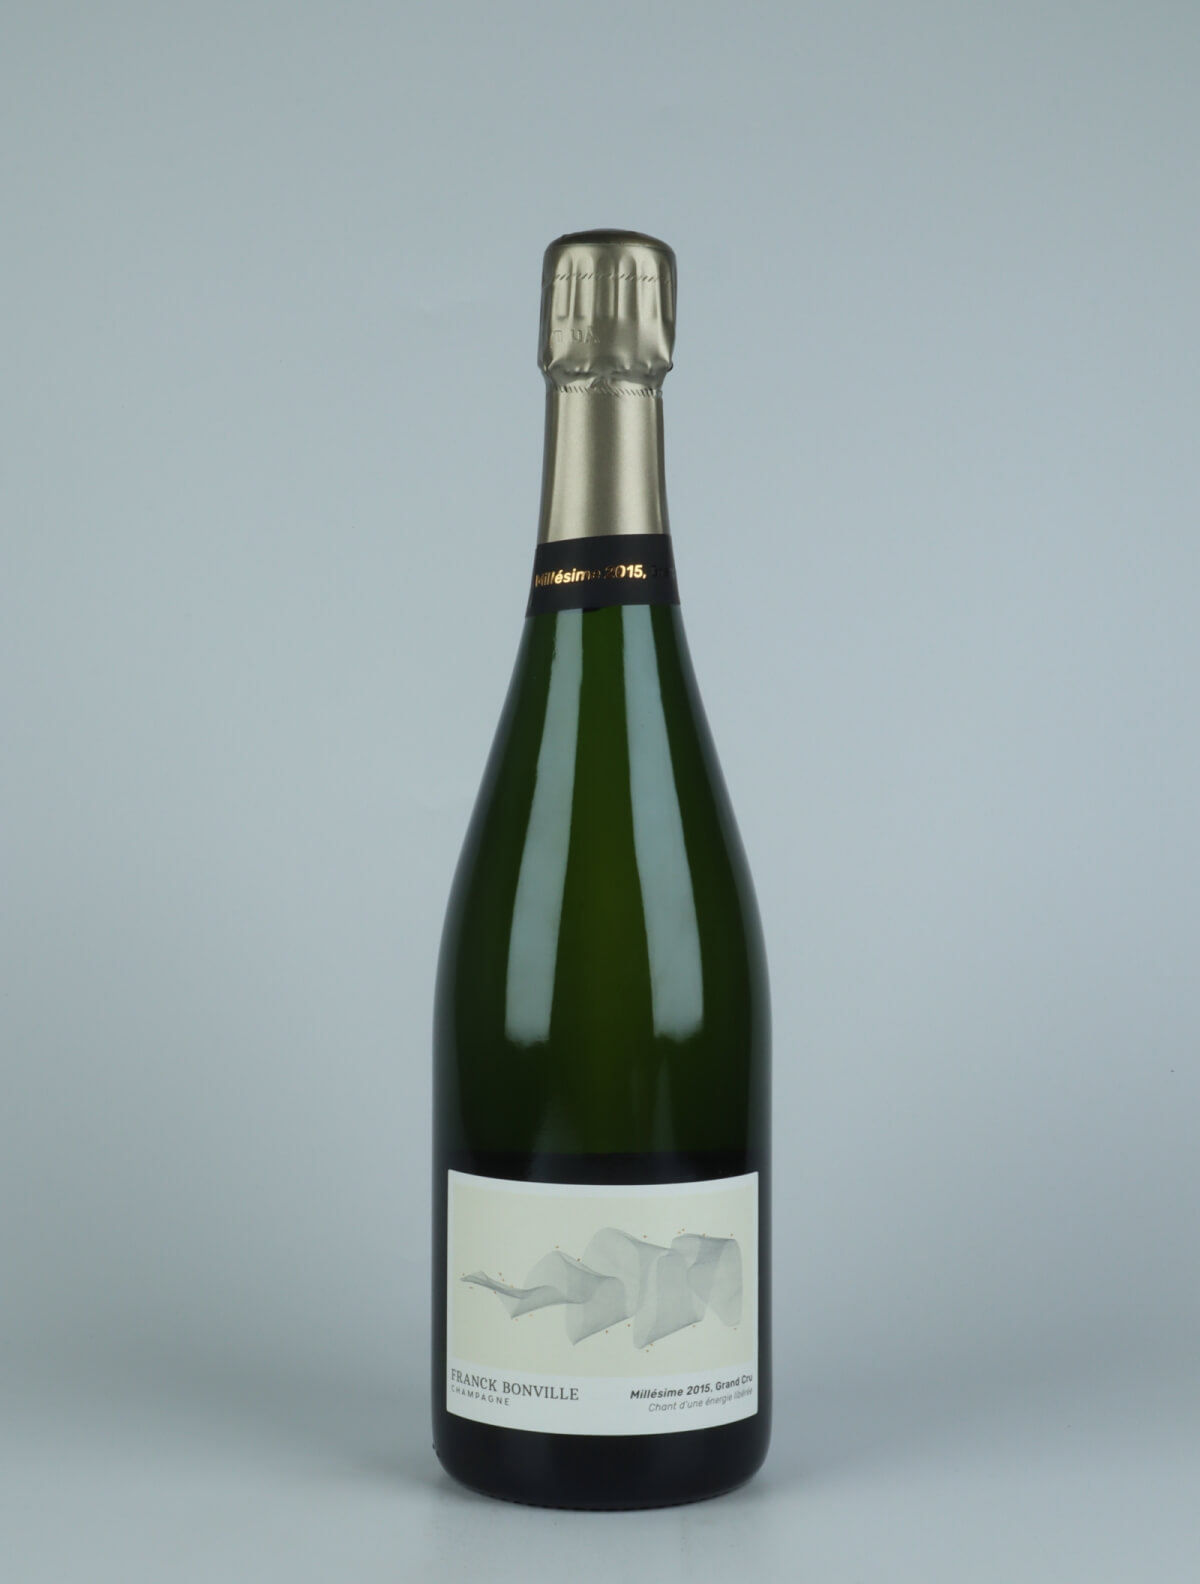 A bottle 2015 Millesime - Grand Cru - Blanc de Blancs - Extra-Brut Sparkling from Franck Bonville, Champagne in France